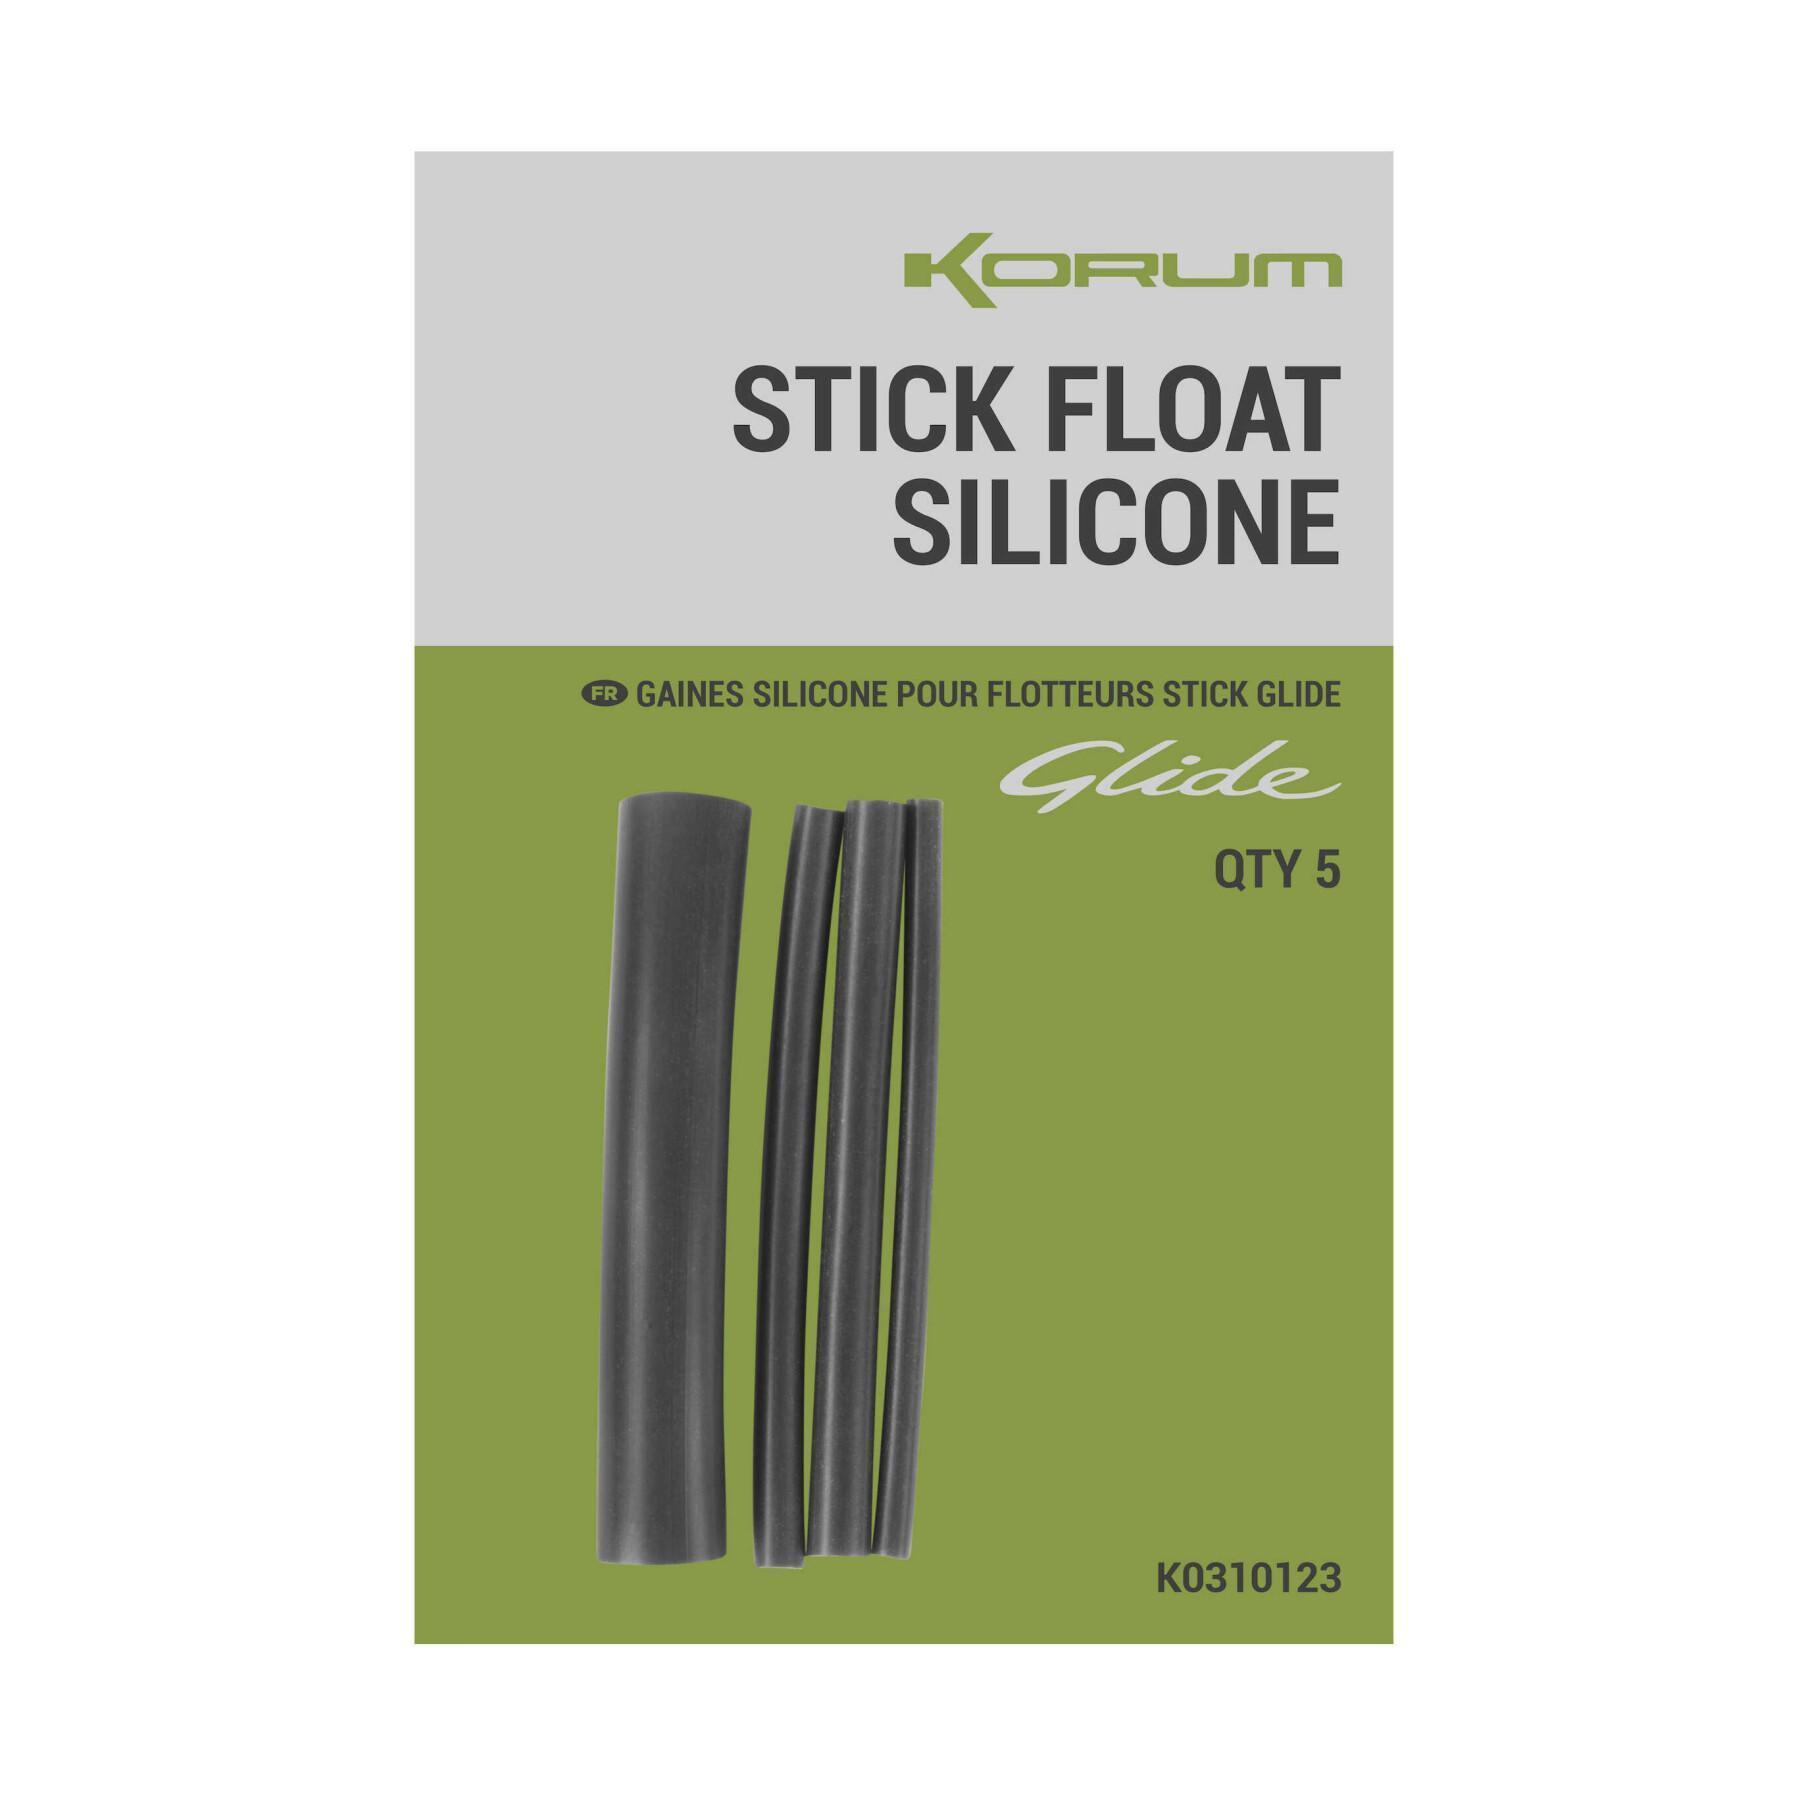 Flotadores cortados de silicona Korum Glide - Stick 5x5